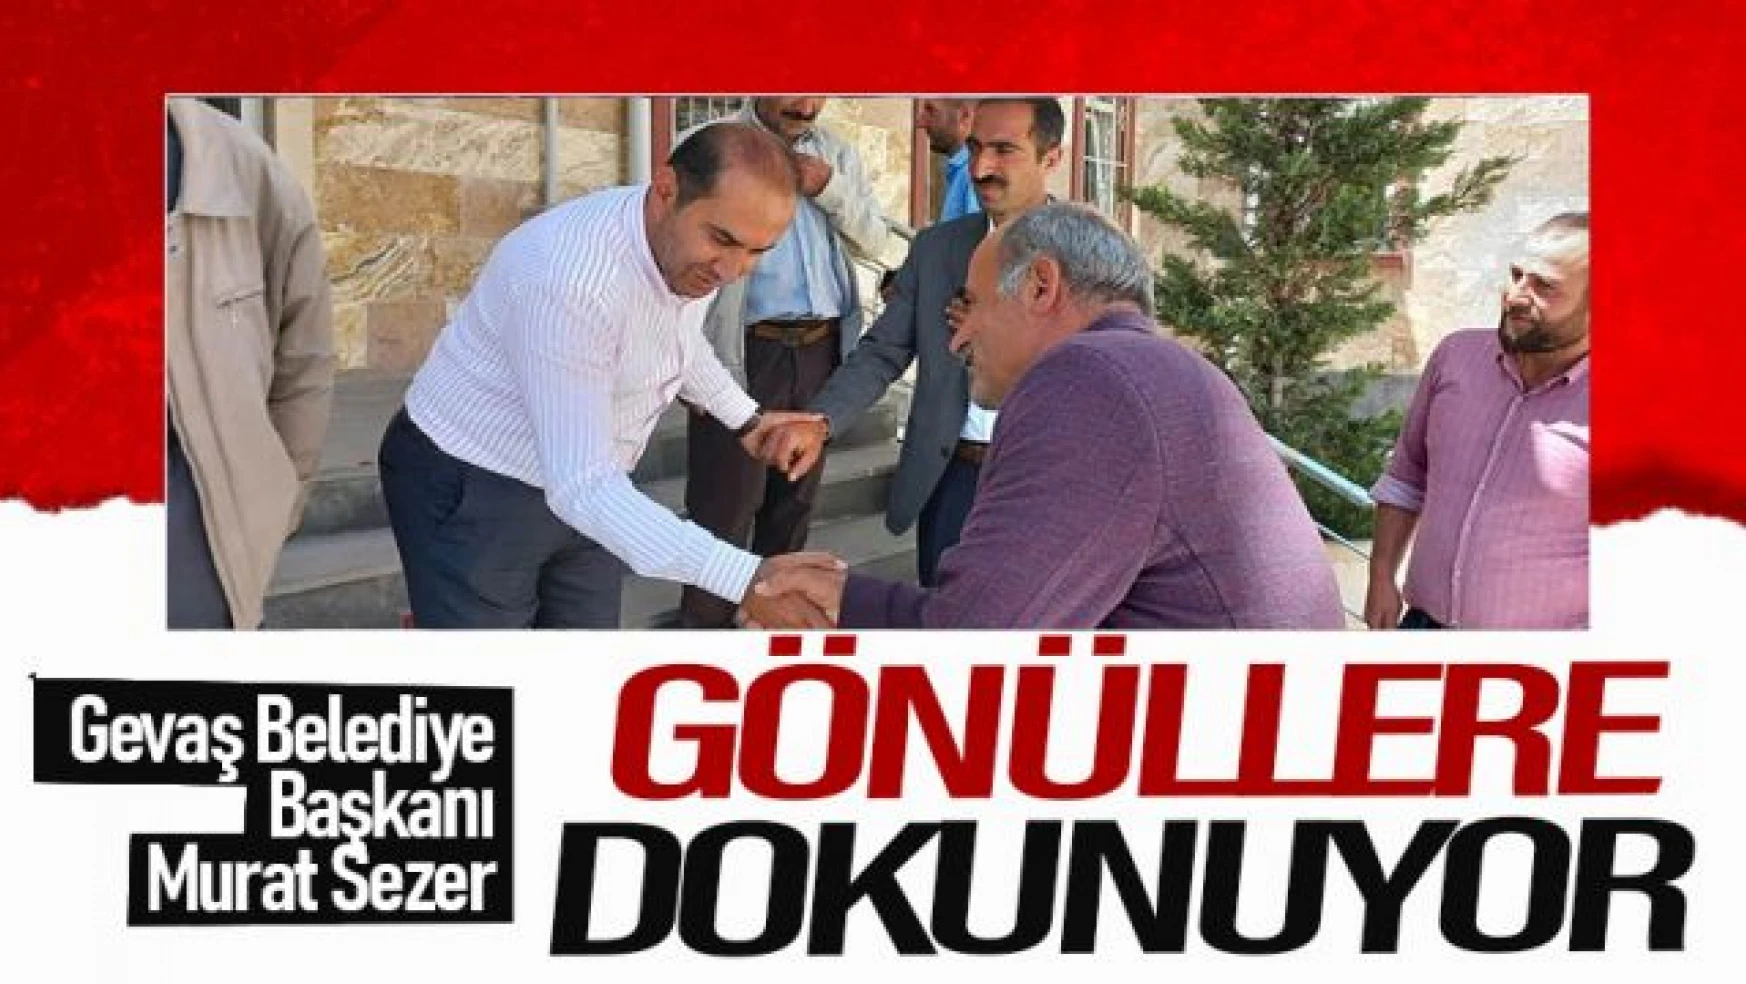 Gevaş Belediye Başkanı Murat Sezer gönüllere dokumaya devam ediyor